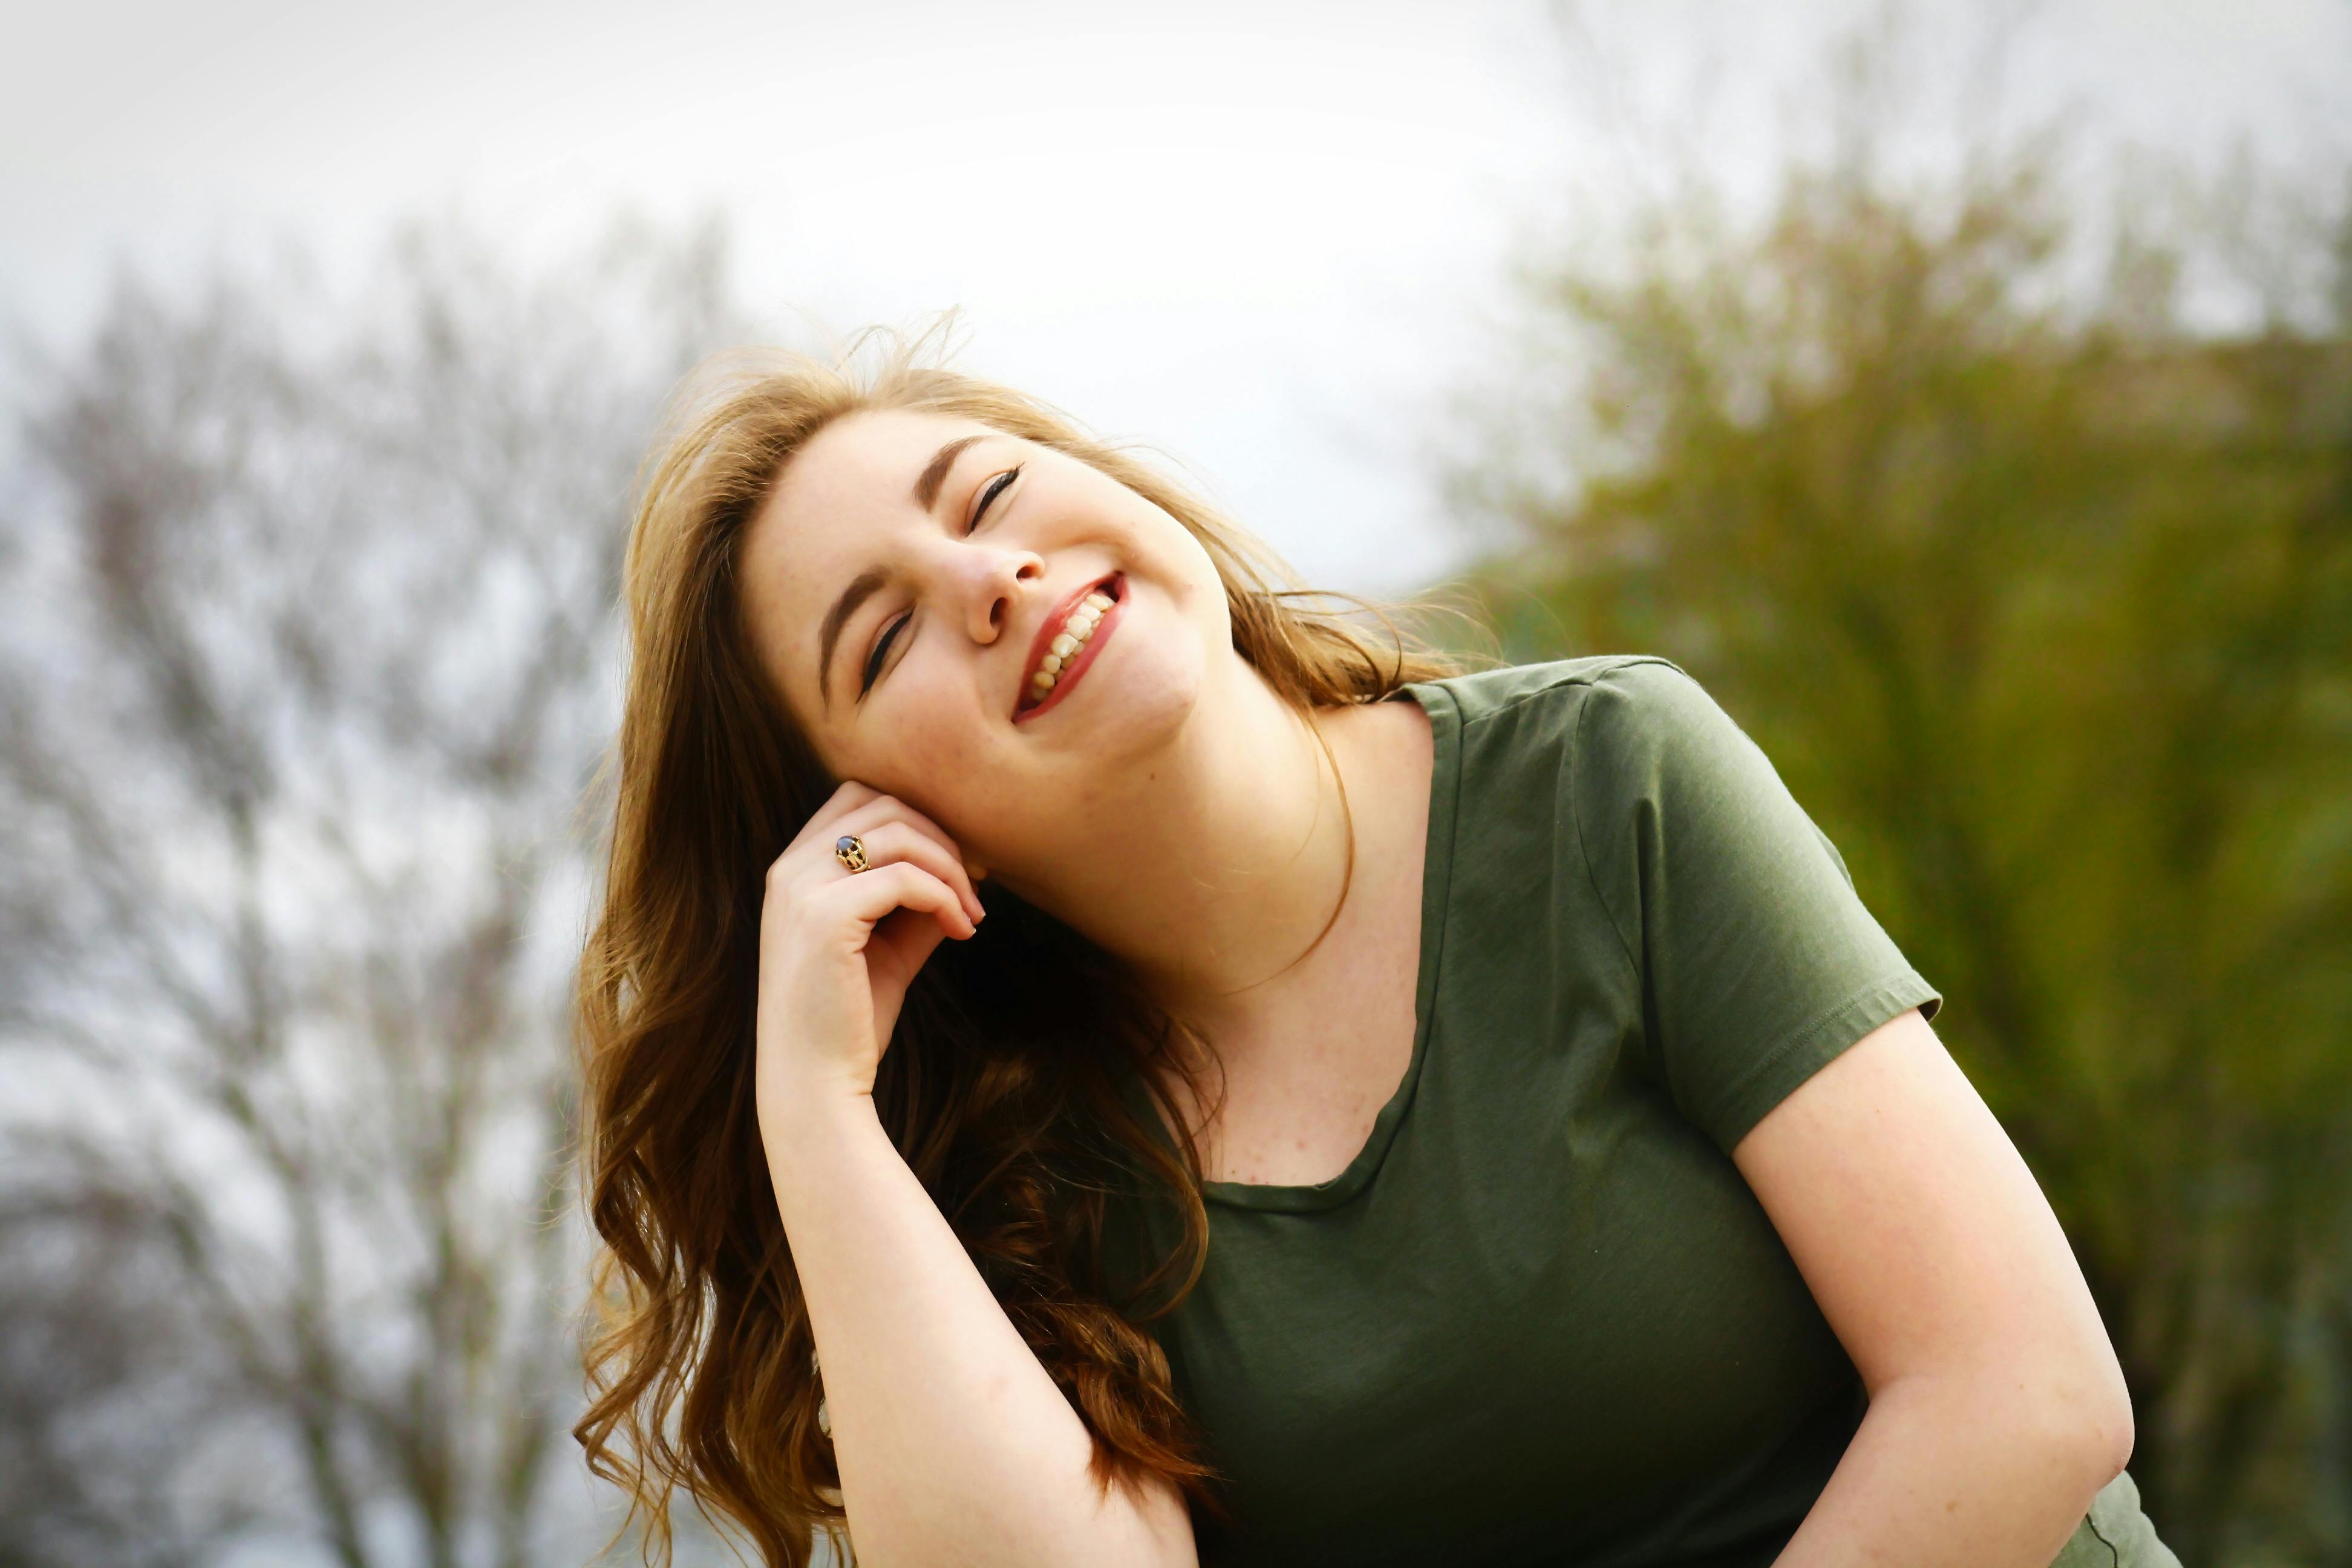 Una mujer feliz sonriendo mientras disfruta del sol | Fuente: Pexels